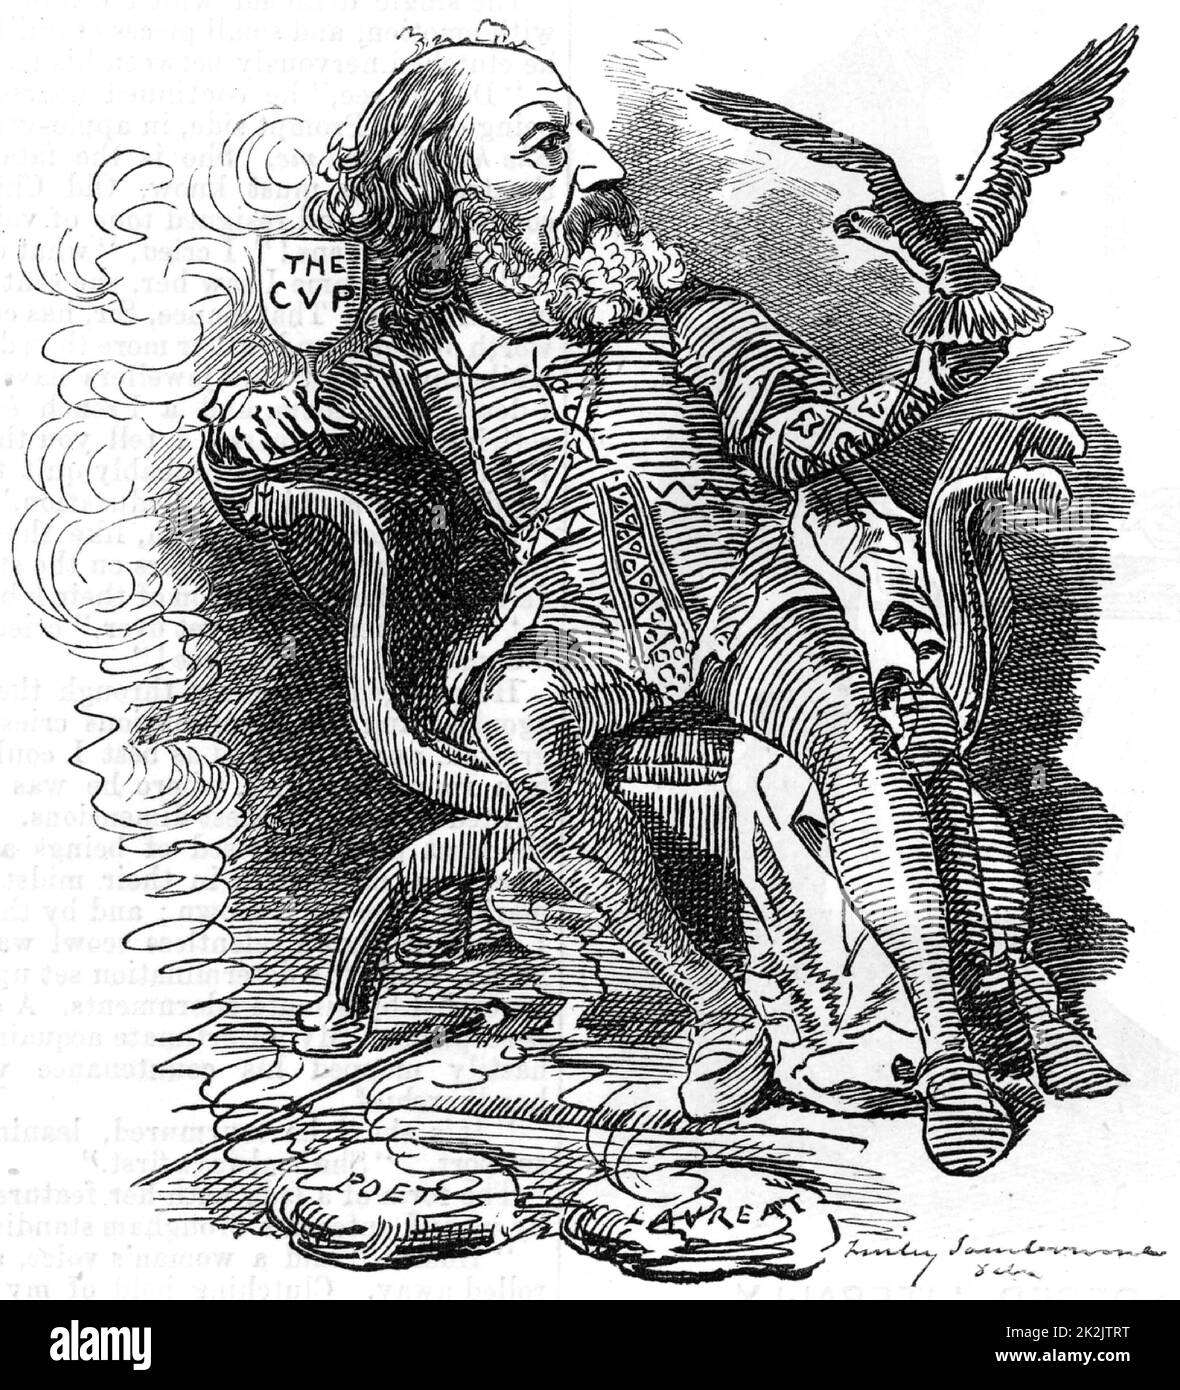 Alfred le Grand : Alfred Tennyson, le premier Baron Tennyson (1809-1893) poète anglais. Succéda à William Wordsworth comme poète lauréat en 1850. Caricature d'Edward Linley Sambourne dans la série Punch's Fancy Portraits de 'Punch' (Londres, 15 mars 1882). Banque D'Images